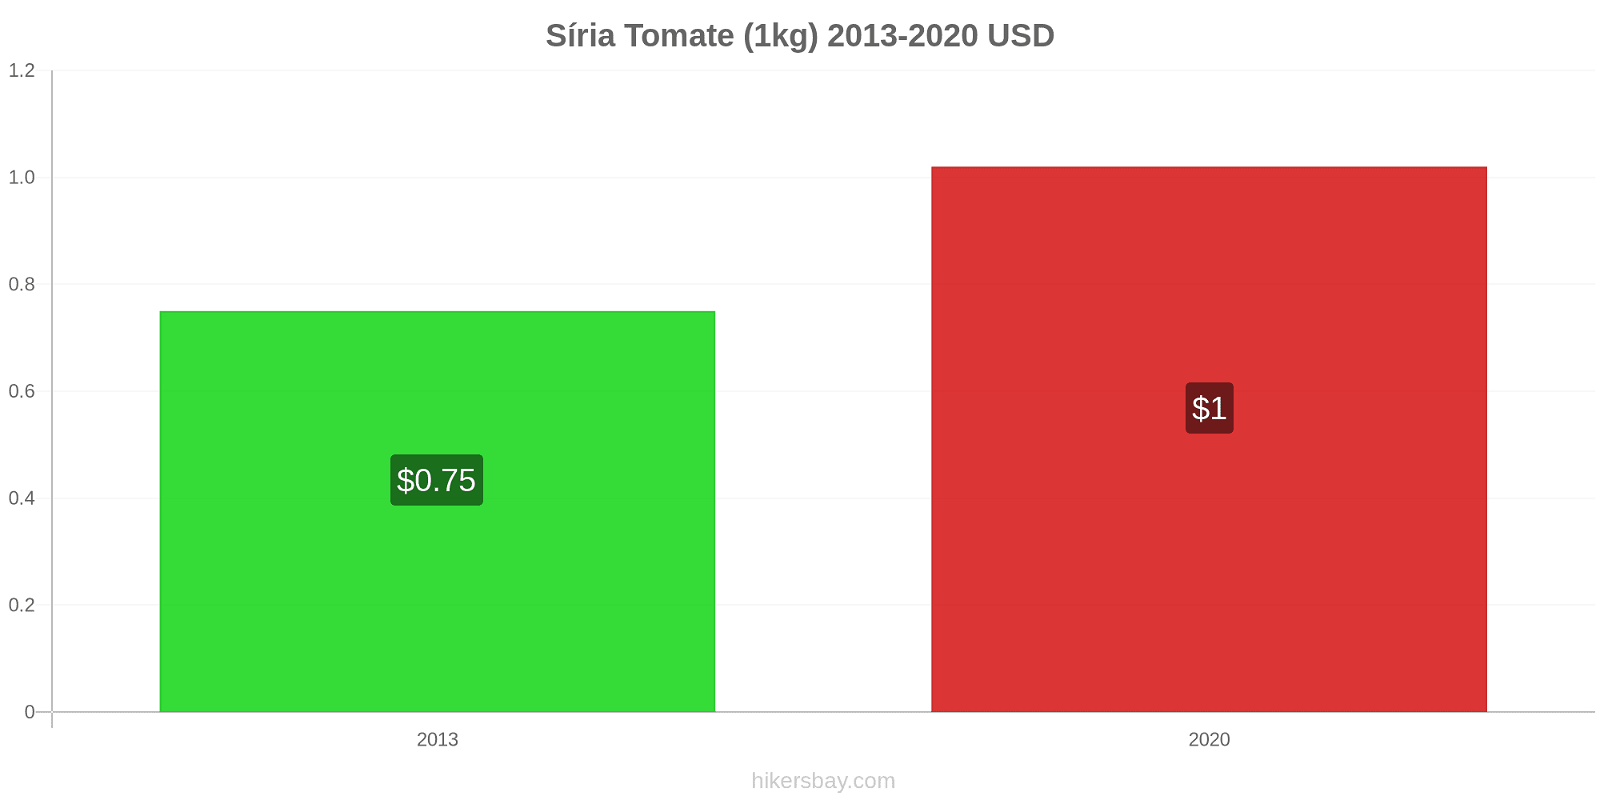 Síria variação de preço Tomate (1kg) hikersbay.com